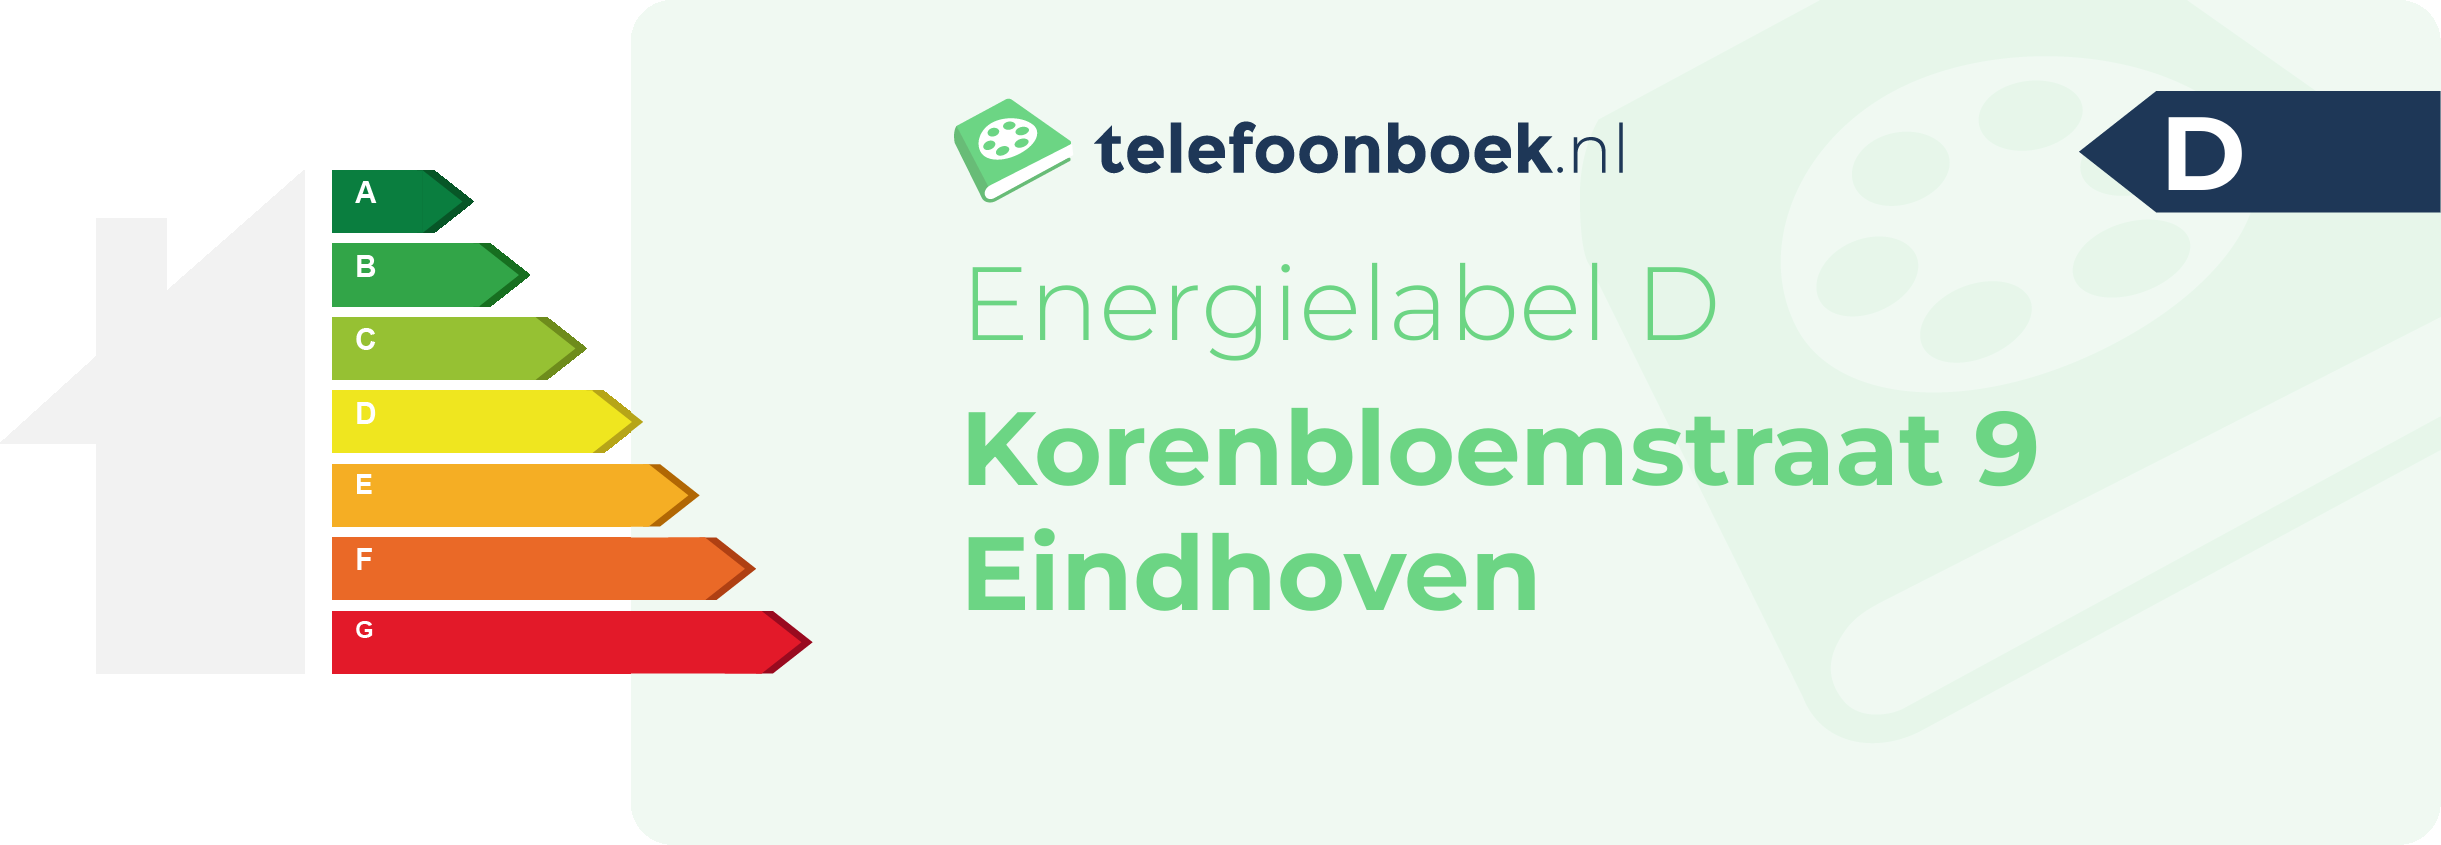 Energielabel Korenbloemstraat 9 Eindhoven